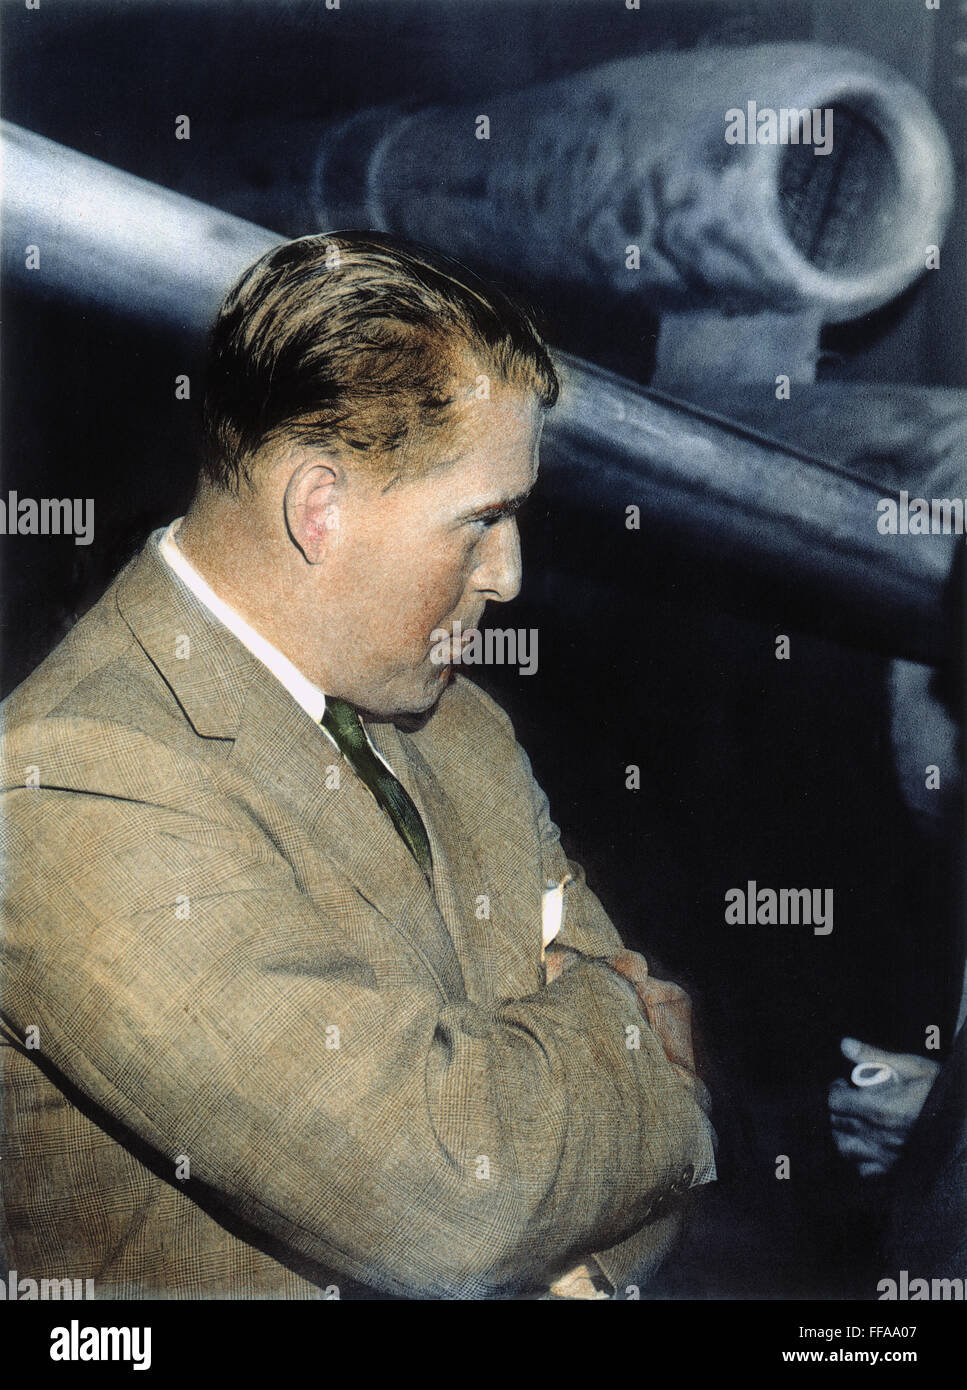 WERNHER von BRAUN /n(1912-1977). Deutsche Raketenwissenschaftler neben einer v-1-Bombe: Öl über ein Foto, 1960. Stockfoto